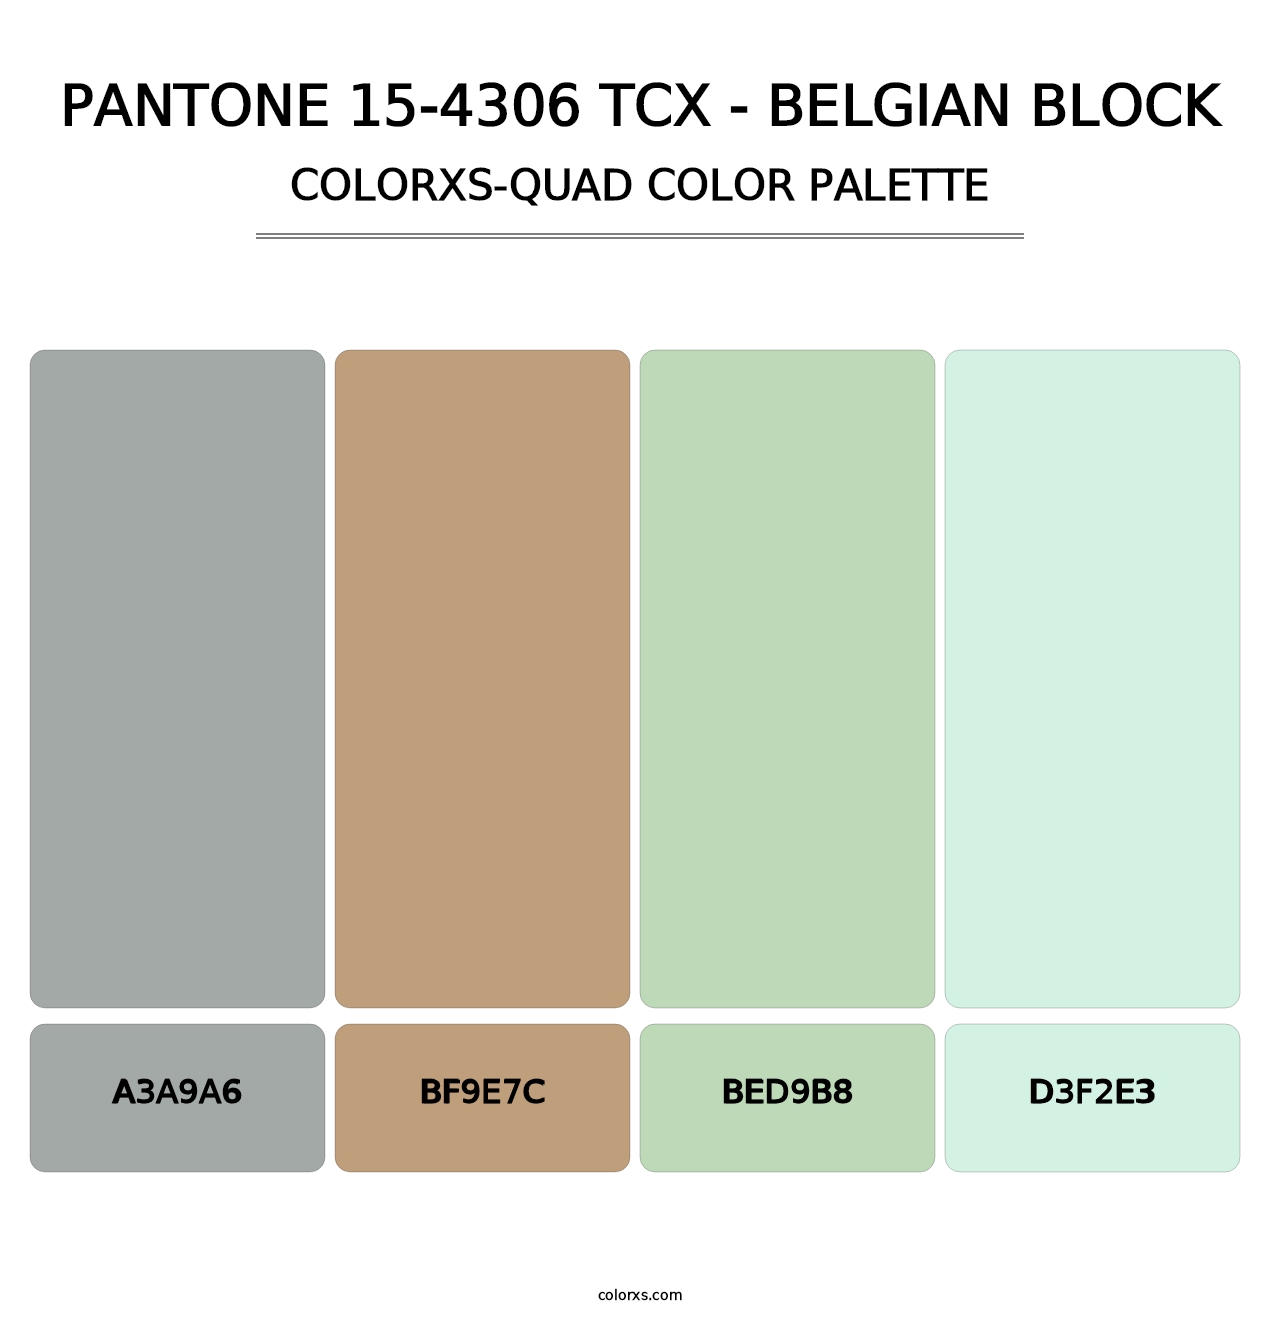 PANTONE 15-4306 TCX - Belgian Block - Colorxs Quad Palette